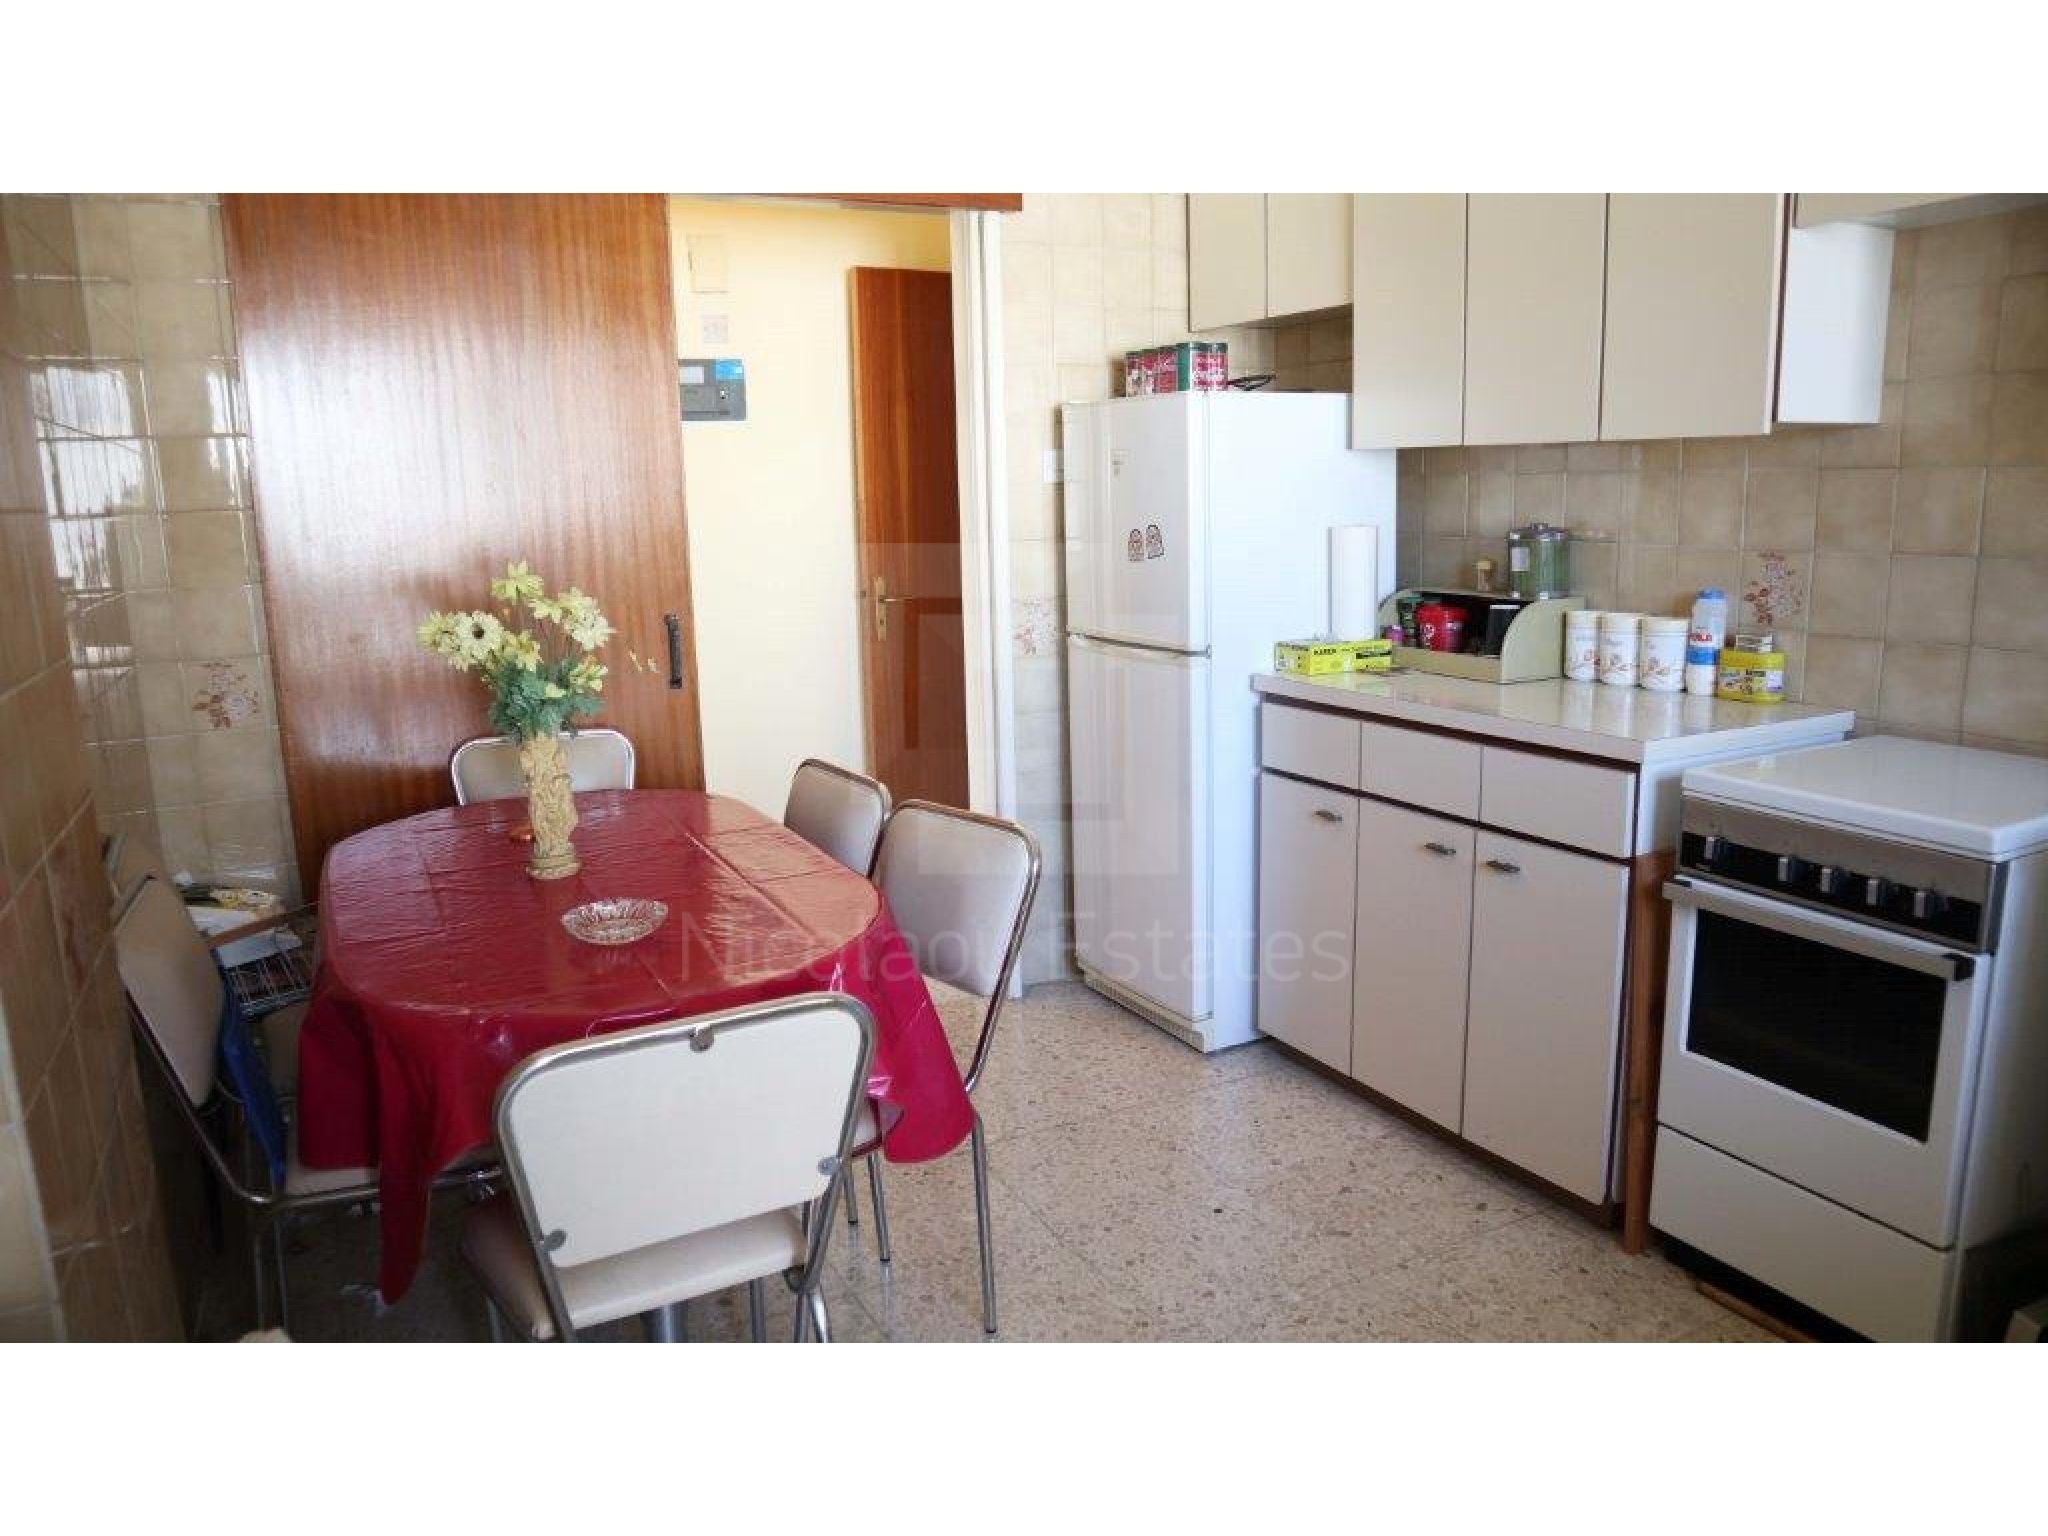 https://www.propertiescy.com/images/uploads/listings/large/12113-1567491038_neapolis-apartment-5.jpg